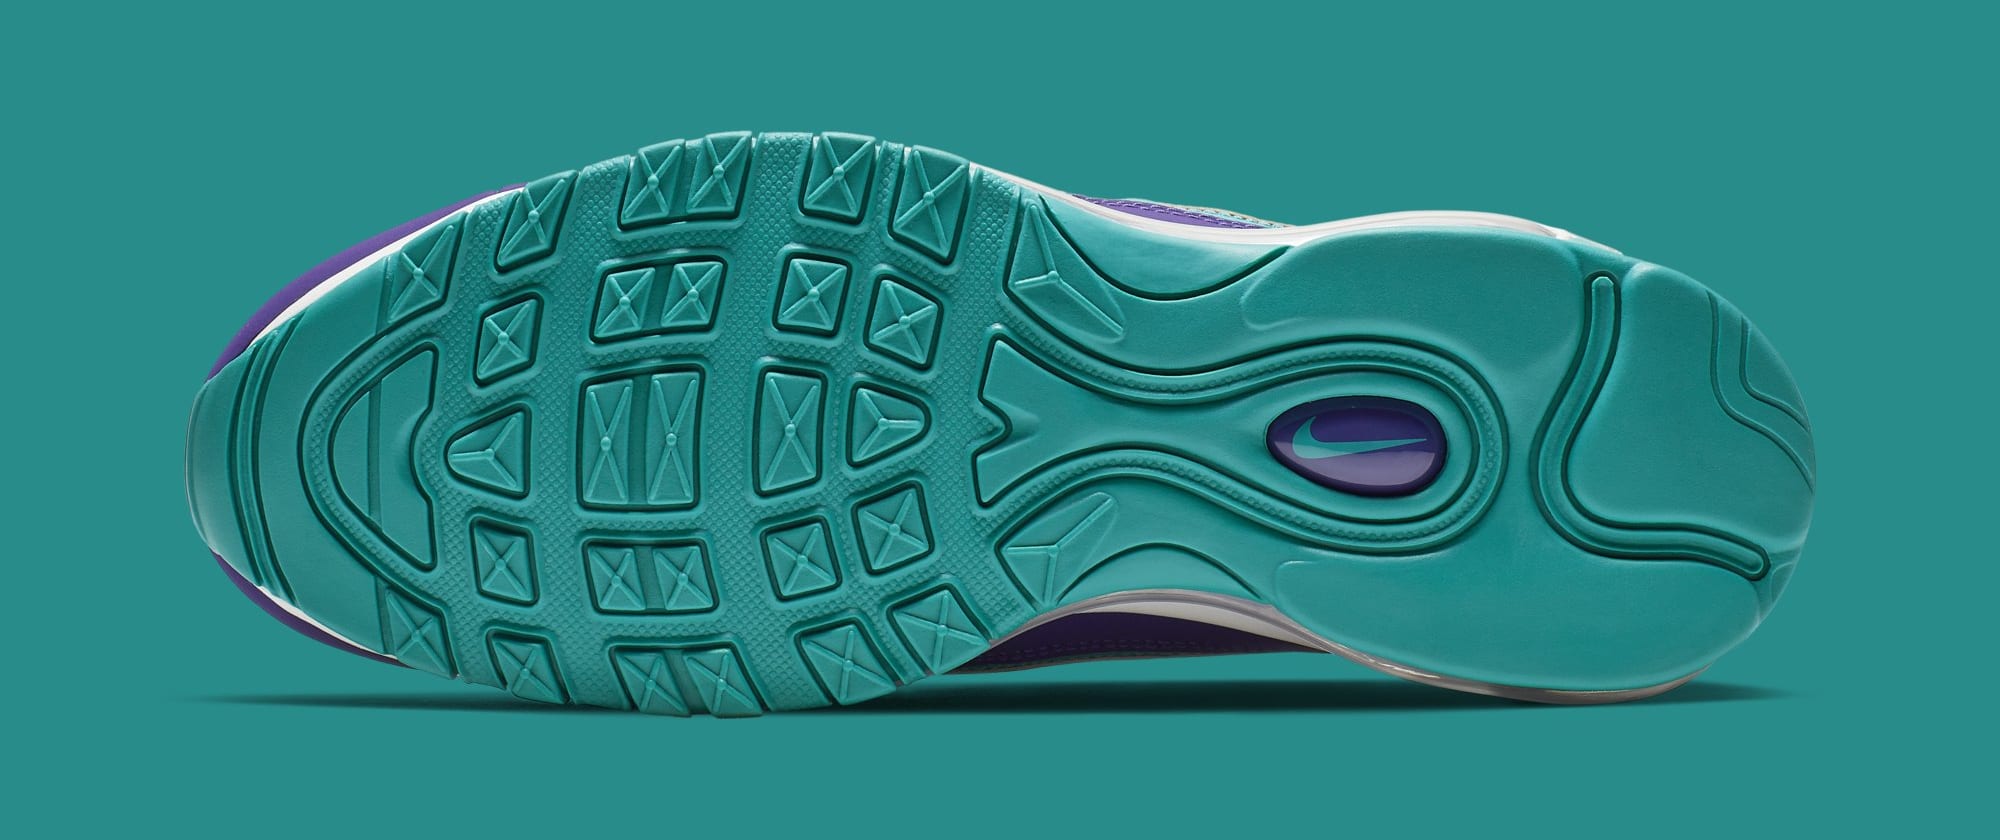 Nike Air Max 98 &#x27;Court Purple/Terra Blush-Spirit Teal&#x27; 640744-500 (Bottom)